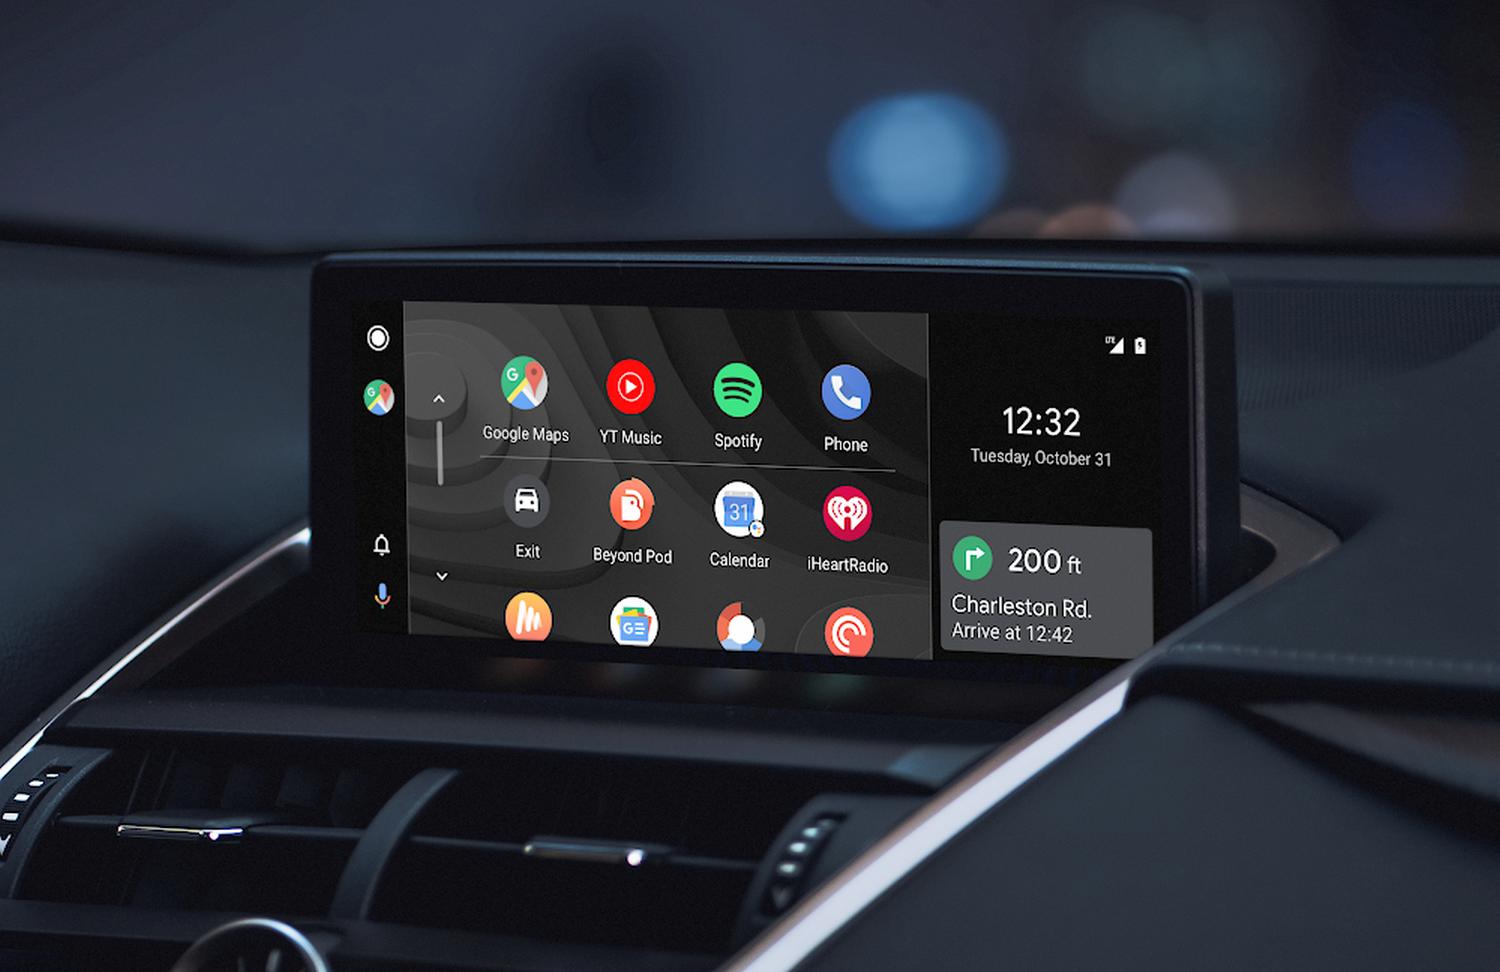 Android Auto: Kabellose Verbindung kommt für alle Smartphones mit